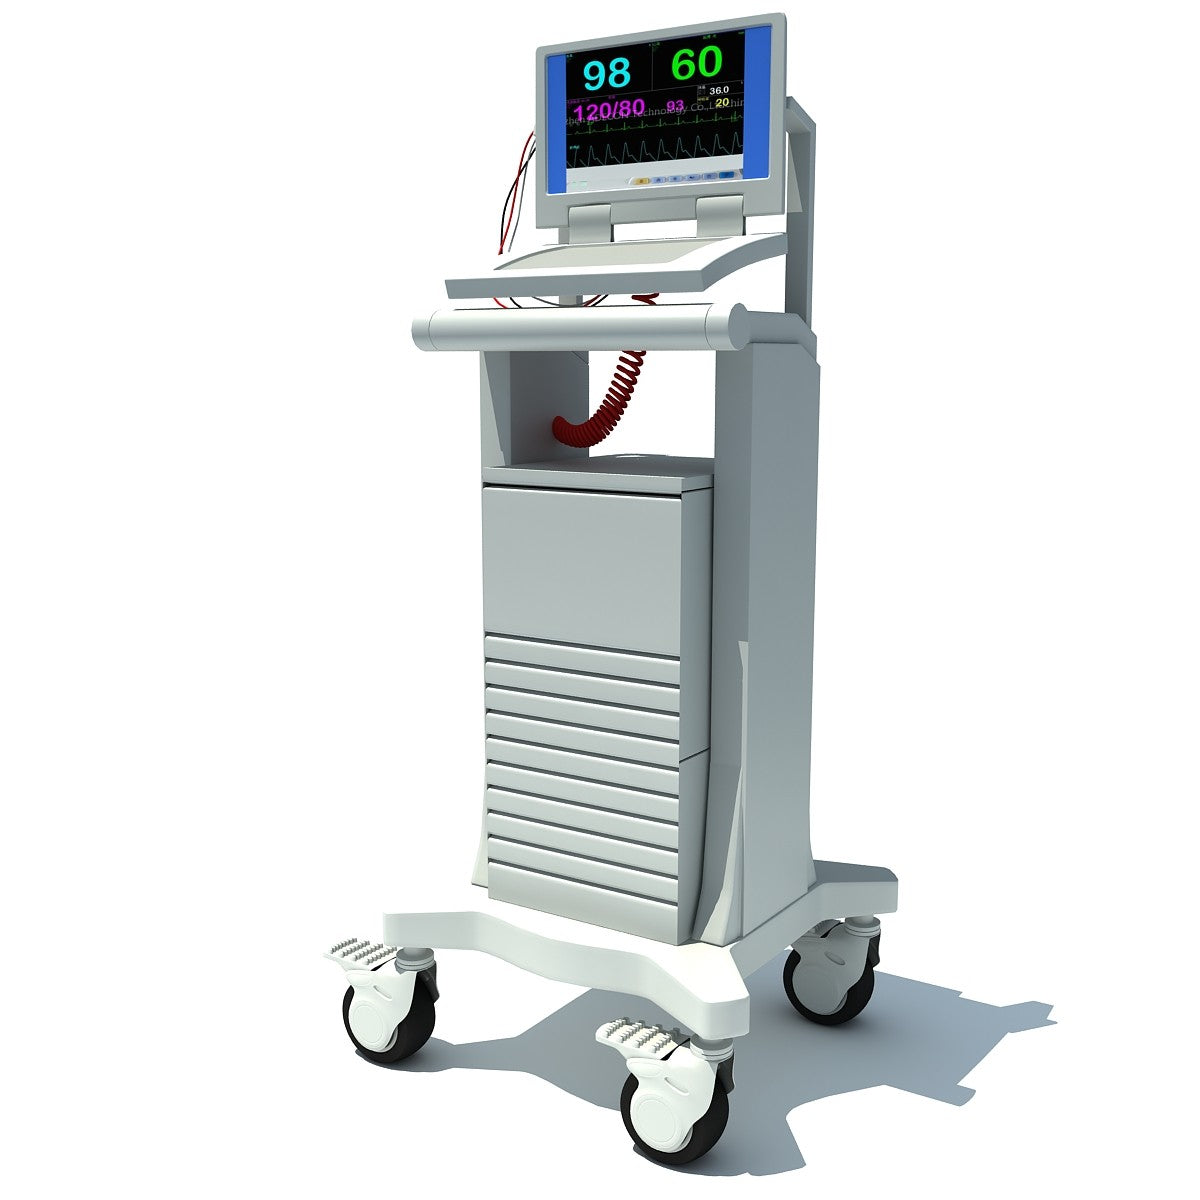 3D Medical Equipment Model